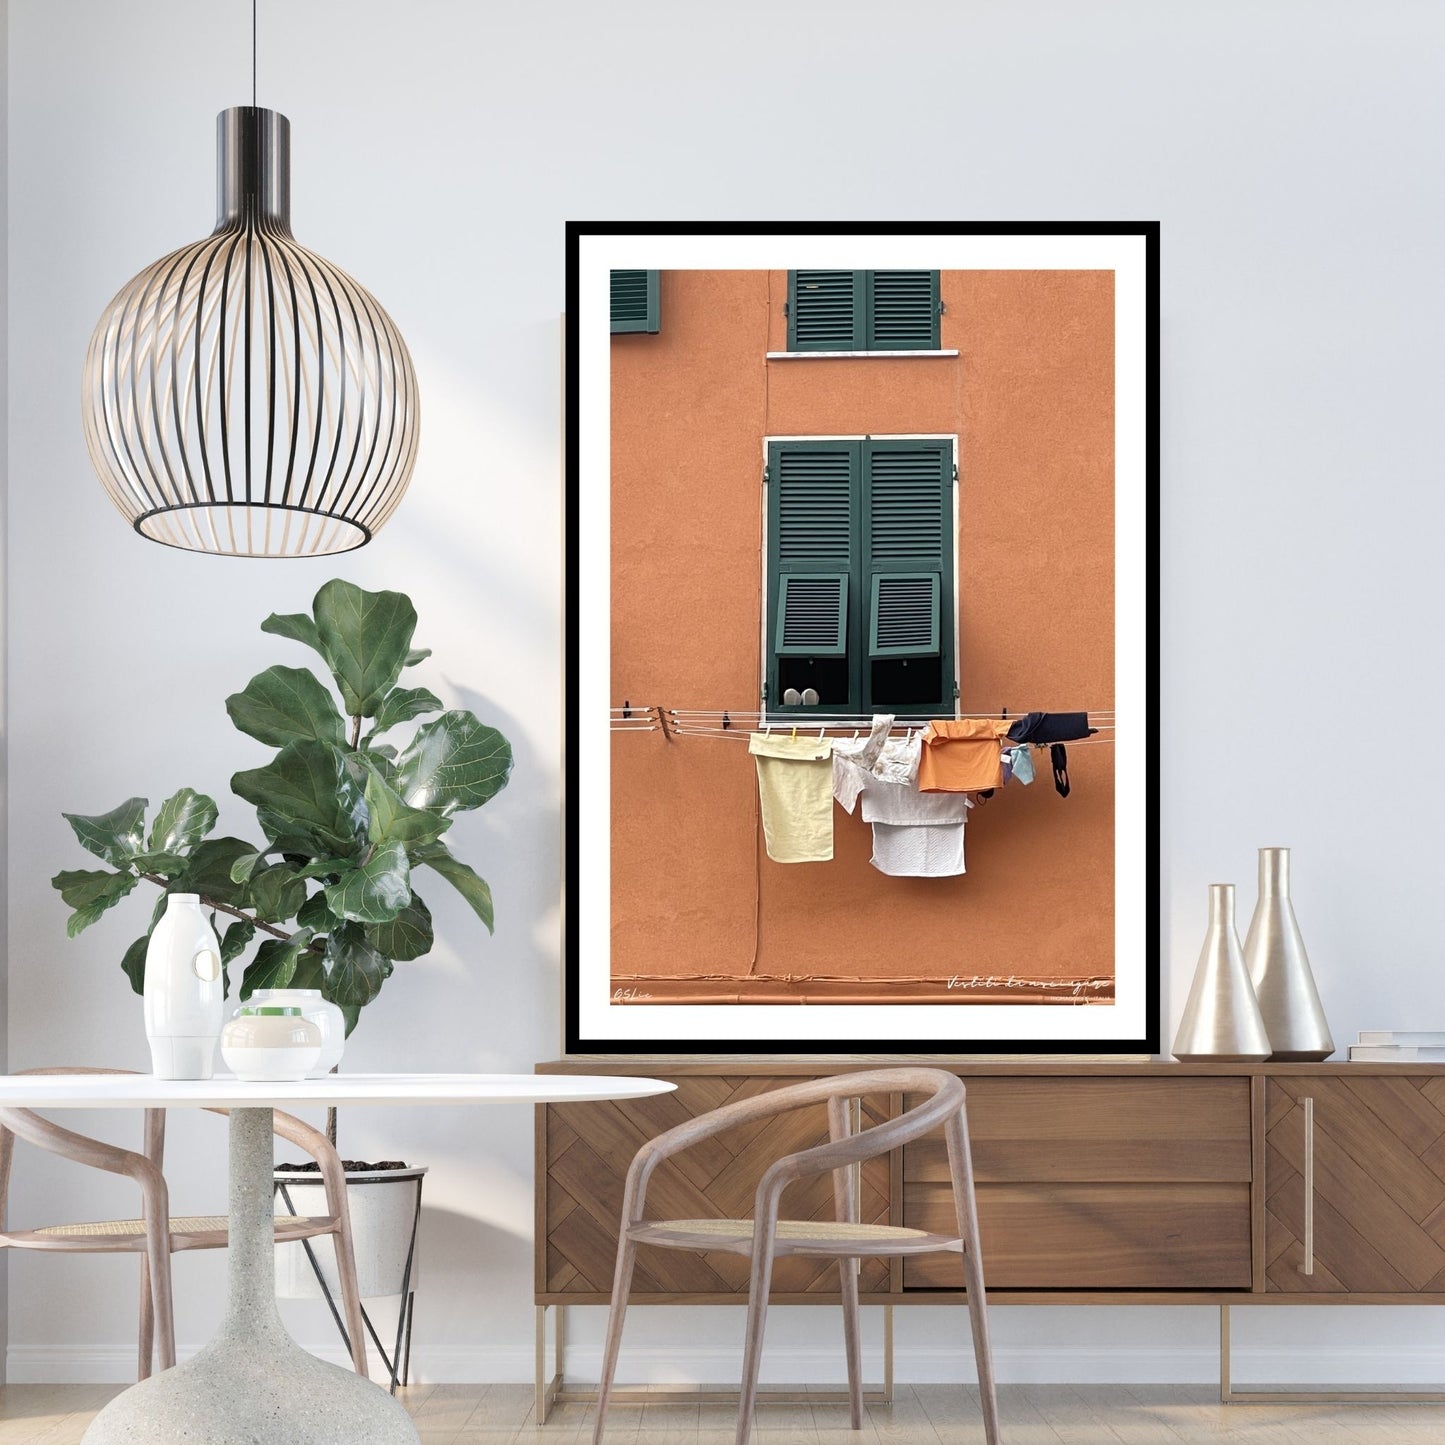 Plakat viser motiv fra Riomaggiore, en av de fem byene i Cinque Terre ved Liguriakysten i Italia. Riomaggiore ligger lengst østover av de 5 byene. Her er det som i alle Italienske byer, klestørk på kryss og tvers på alle husfasader. På plakaten er det en oransje fasadevegg med et vindu med grønne skodder. Under vinduet henger dagens klesvask til tørk.  Plakaten som har en hvir kant rundt, er innrammet i sort ramme.